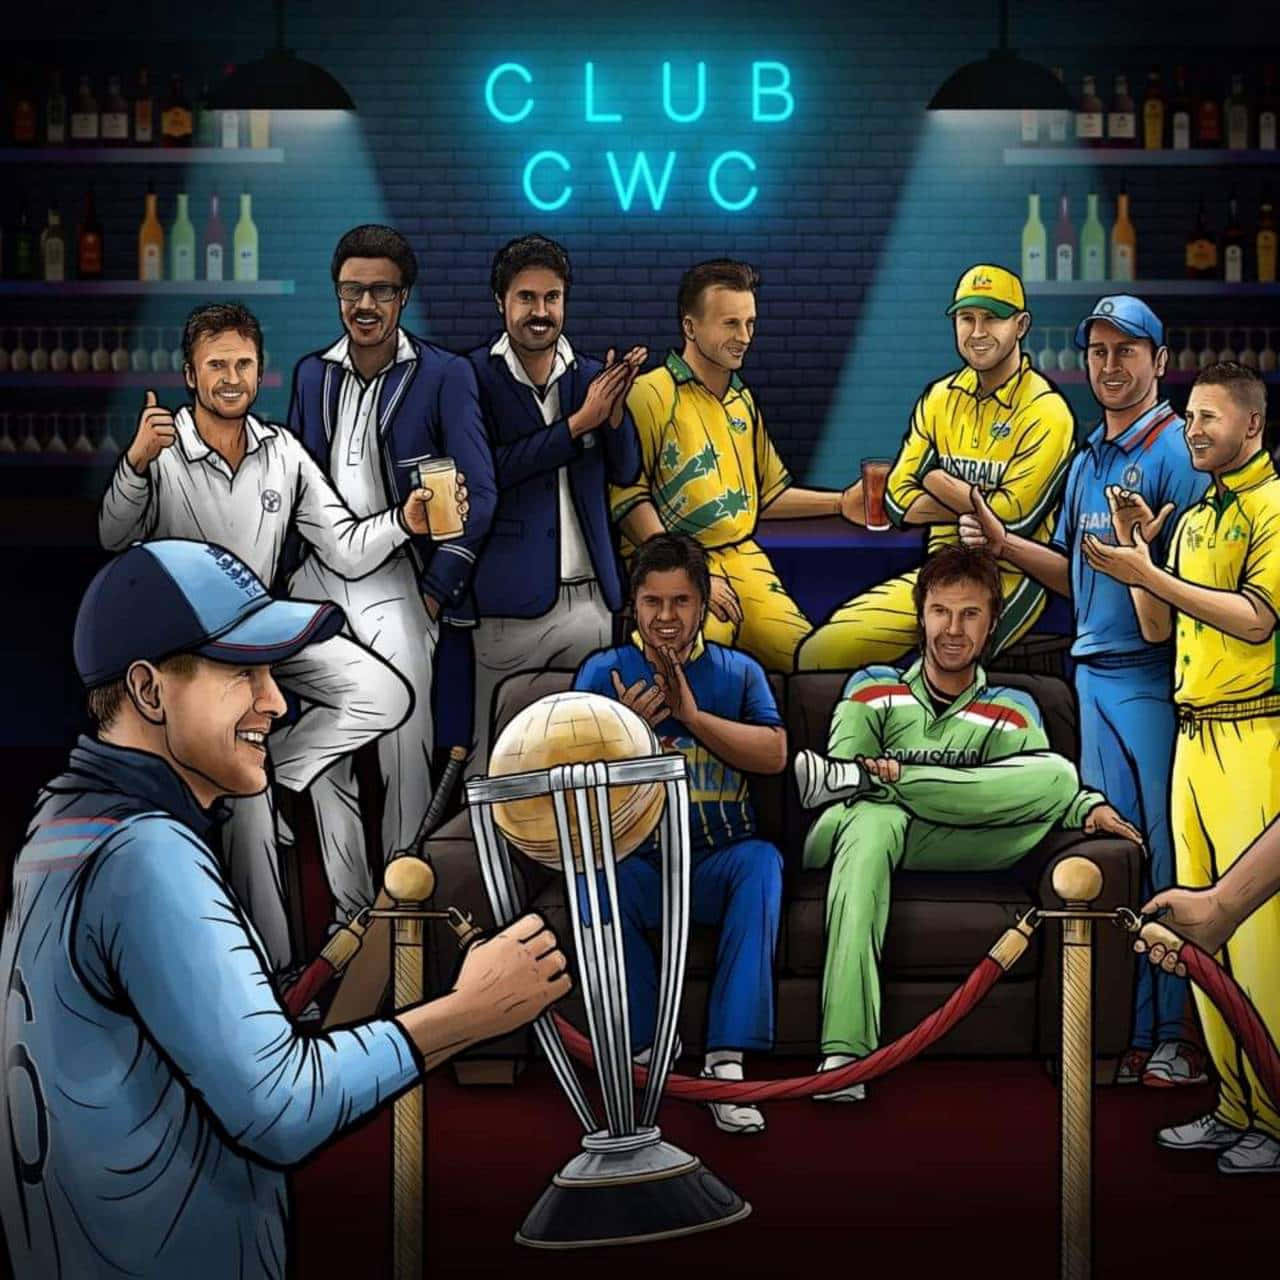 Club cricket World Cup - En gruppe mennesker i en bar, der leger rundt med en bold. Wallpaper